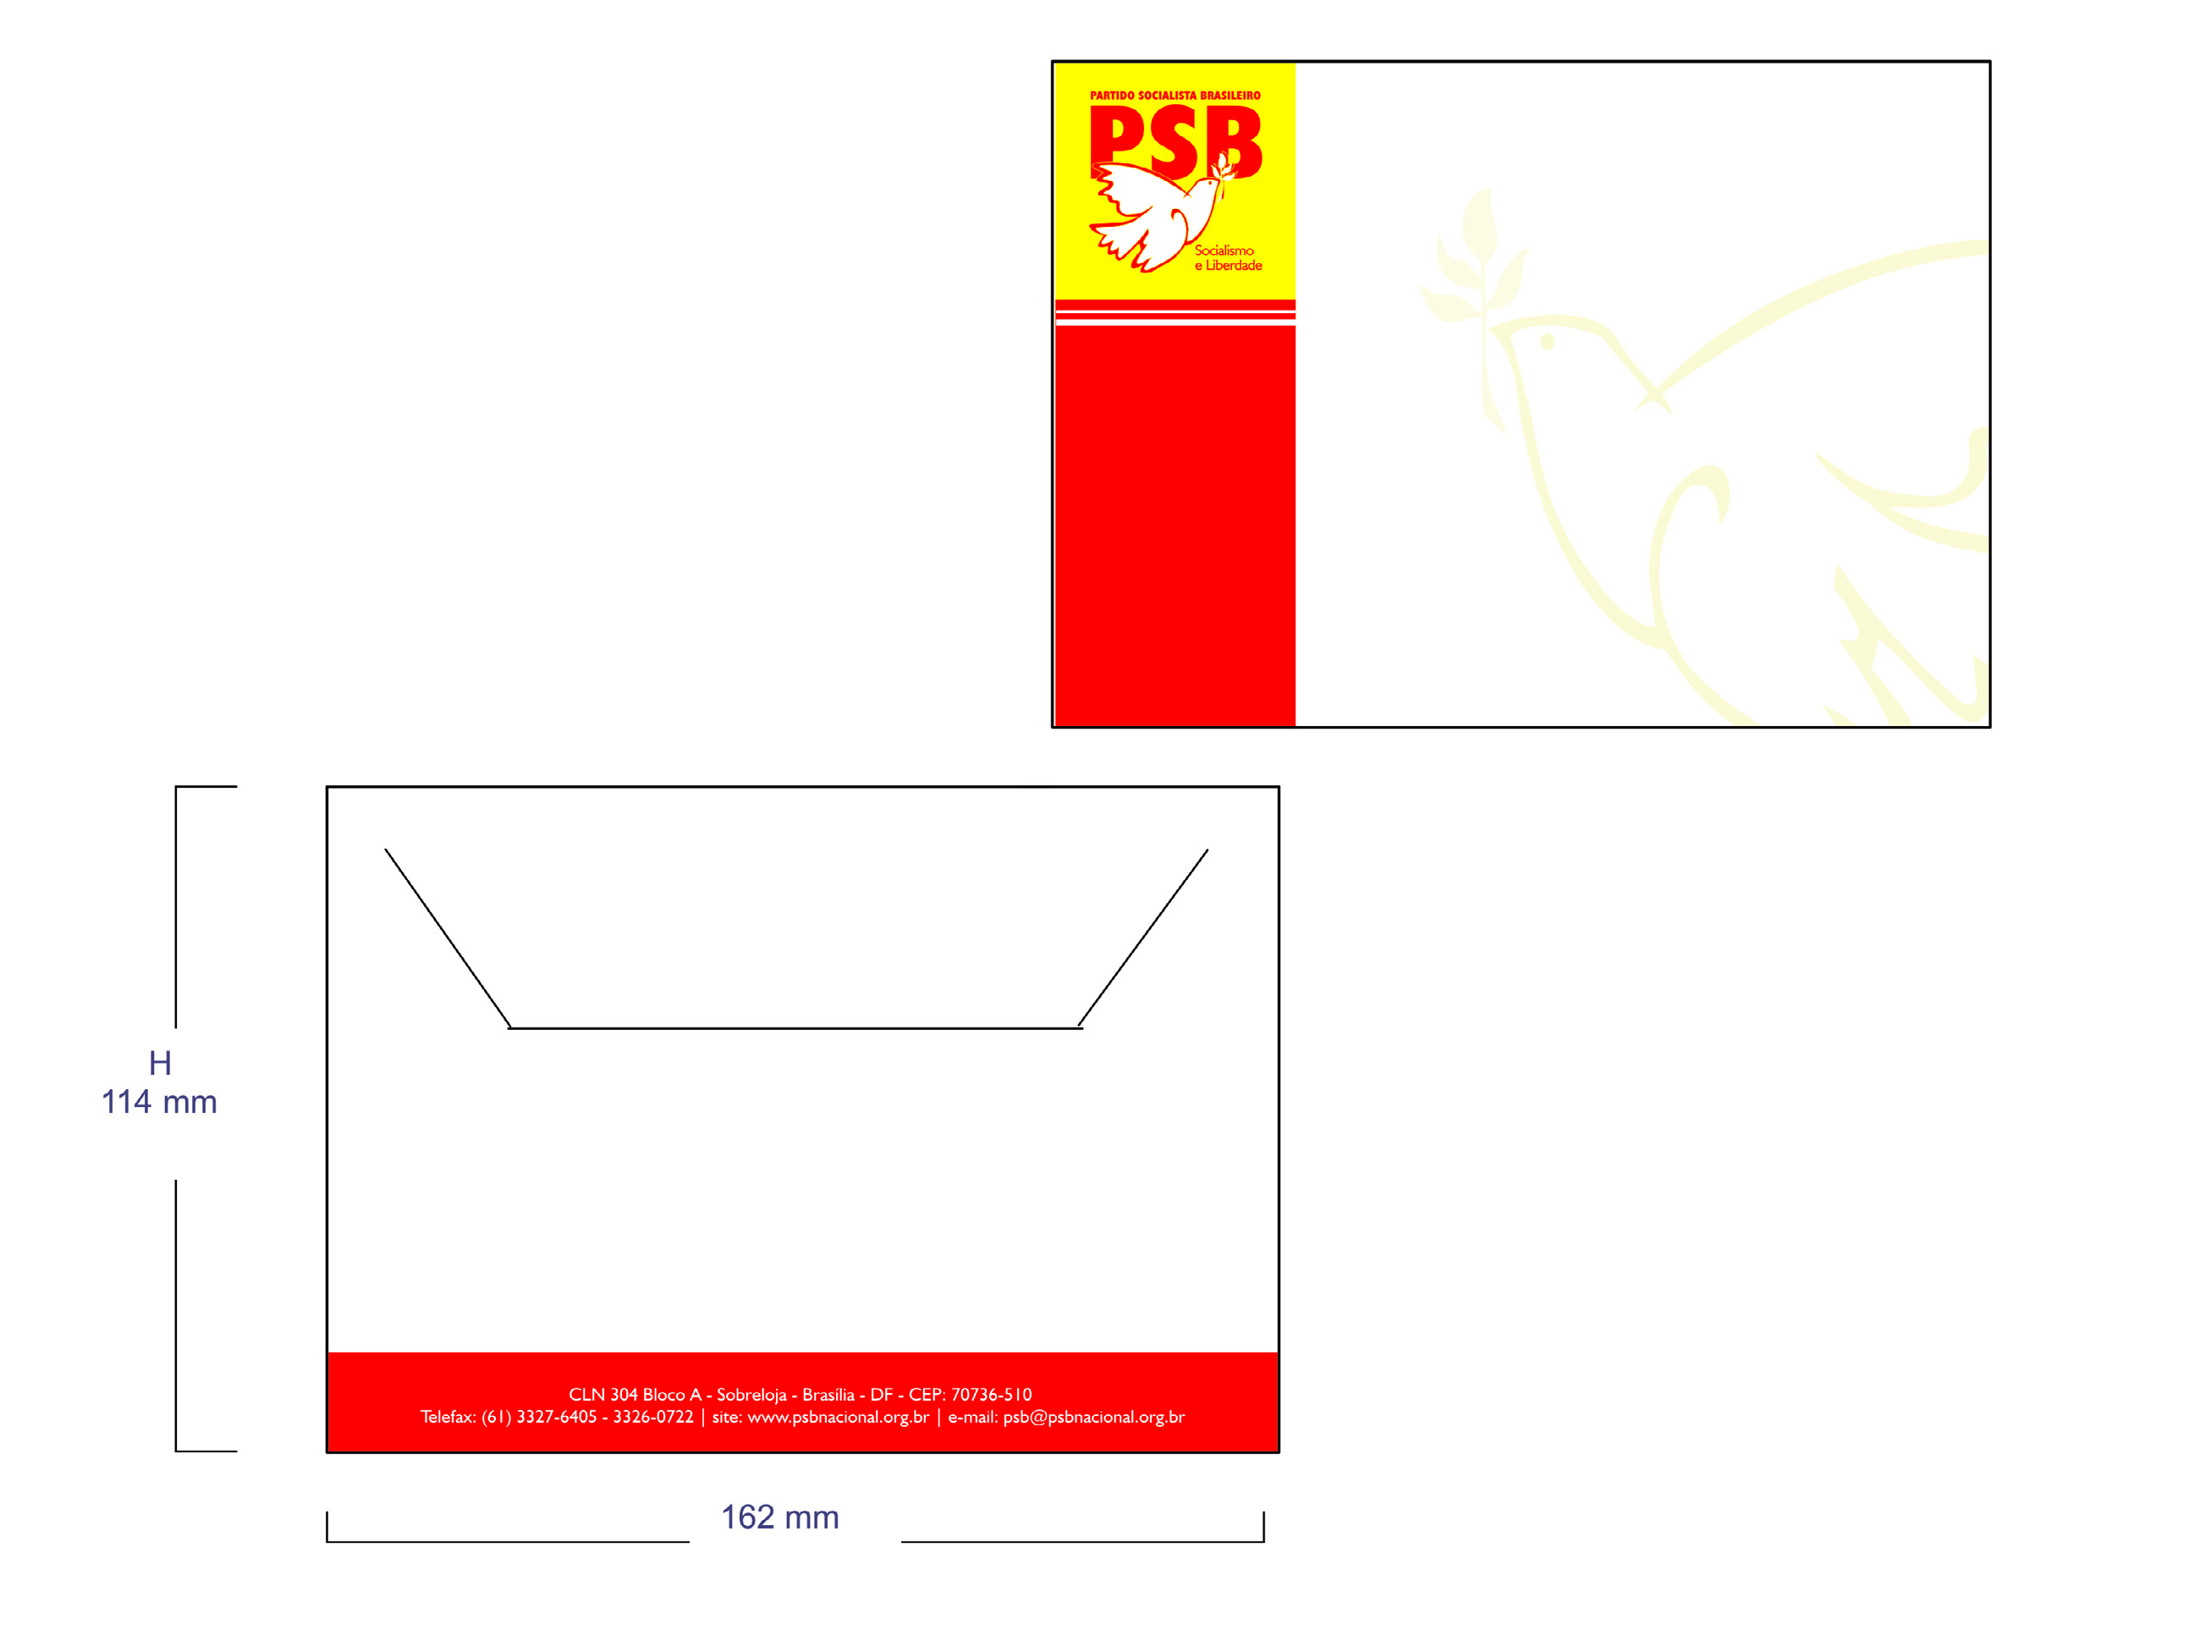 2.2 ENVELOPE CARTÃO 2 Formato: 114 mm x 162 mm Impressão em envelope branco tipo Off-set 120g/m2. A marca será alinhada à esquerda do envelope.